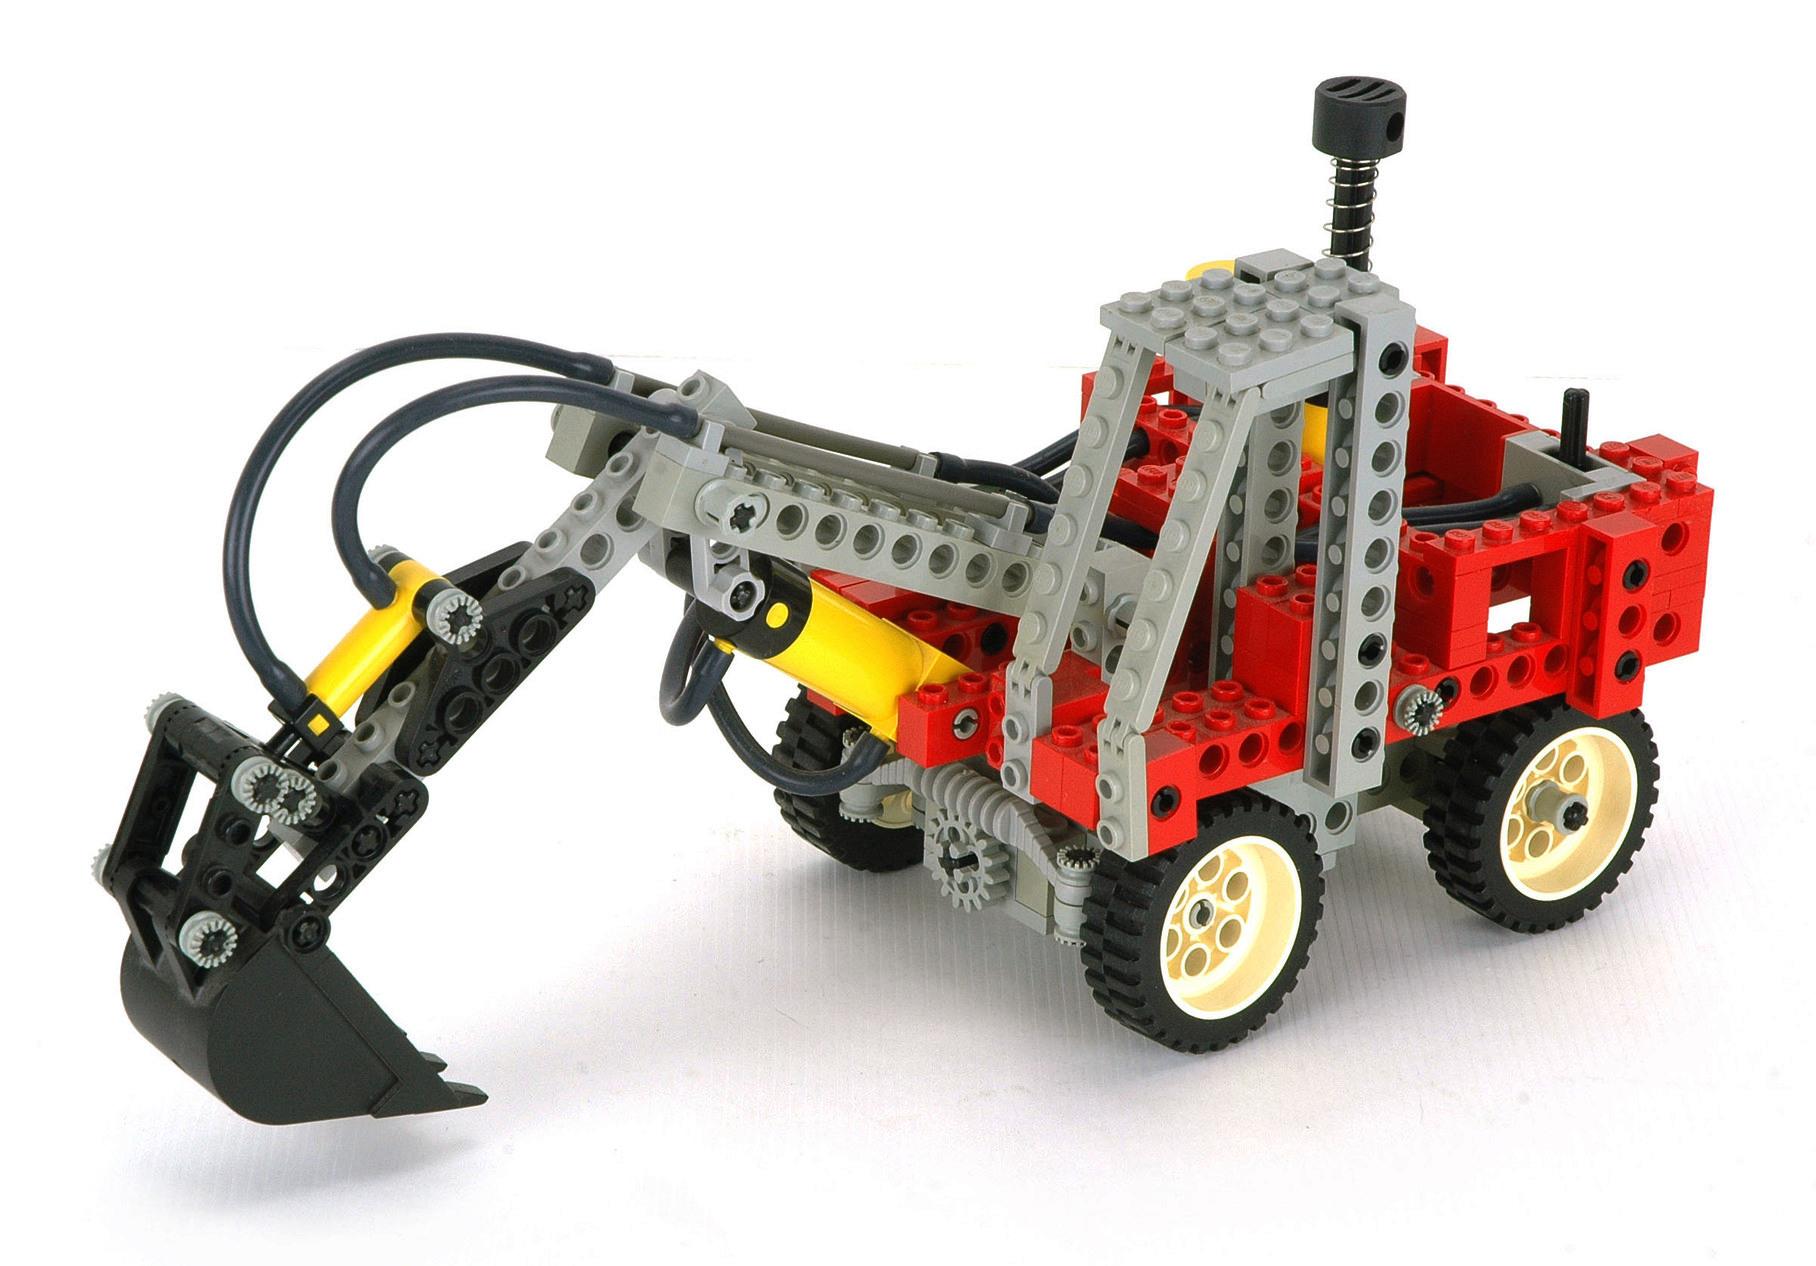 LEGO 8837 Technic Excavator | BrickEconomy